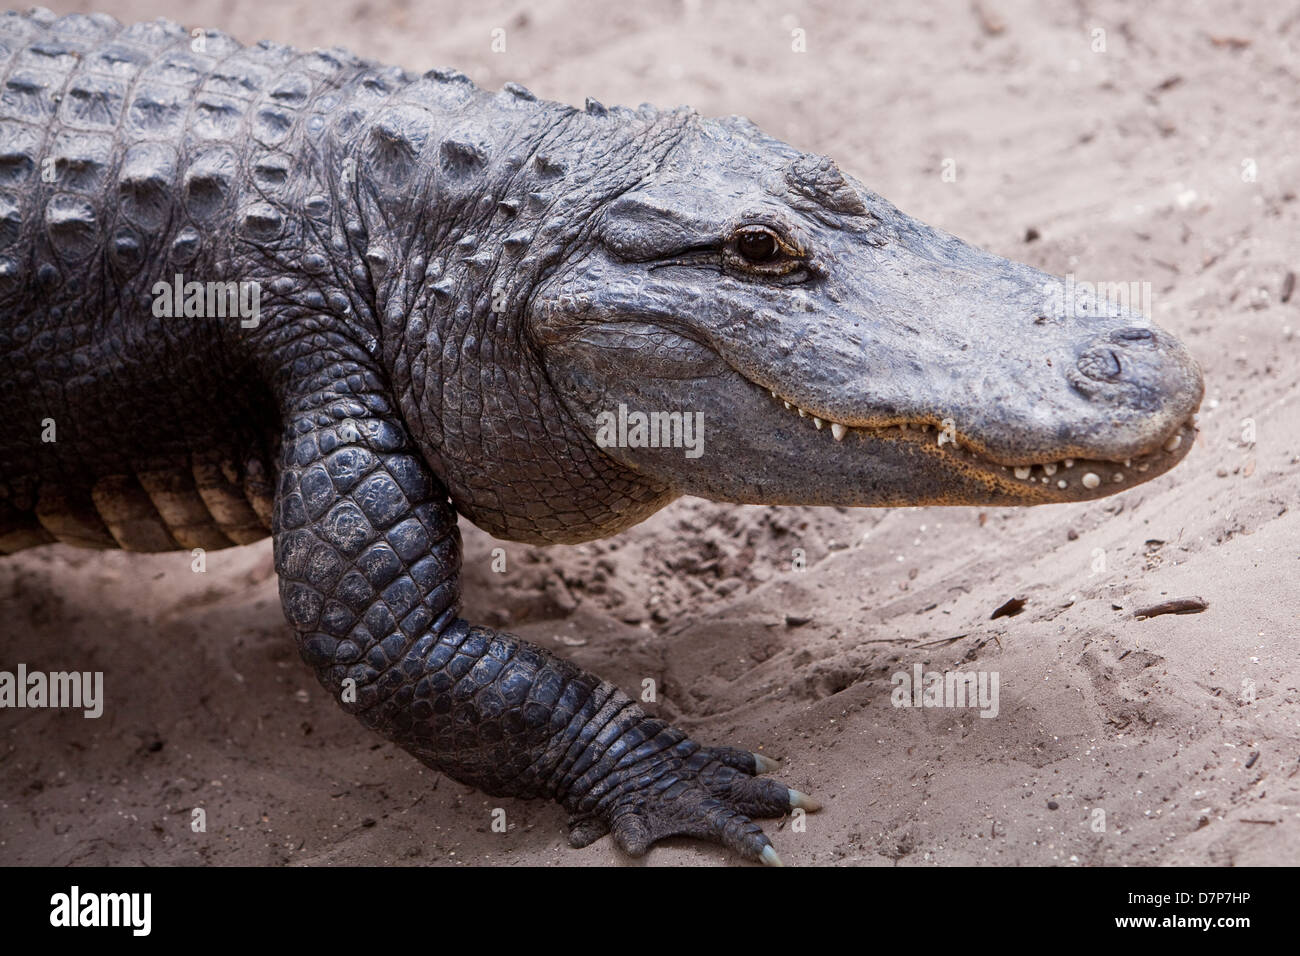 Un alligator est vue à Alligator Farm Zoological Park à Saint Augustine, Floride Banque D'Images